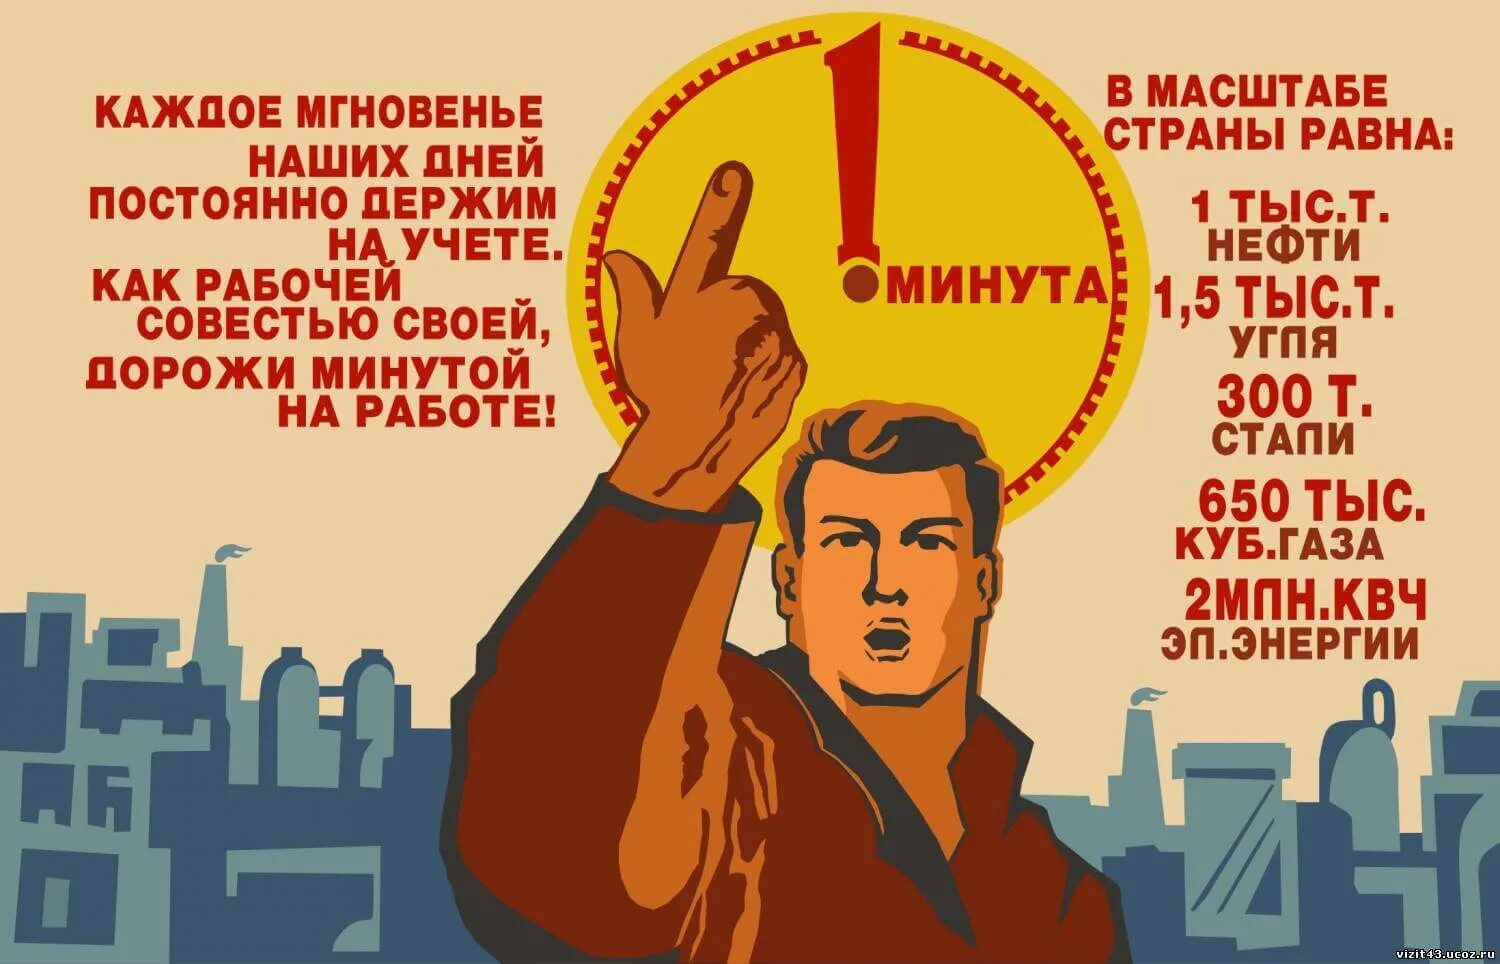 Цените работников. Советские плакаты. Агитационные плакаты. Советские агитационные плакаты. Советские плакаты про труд.